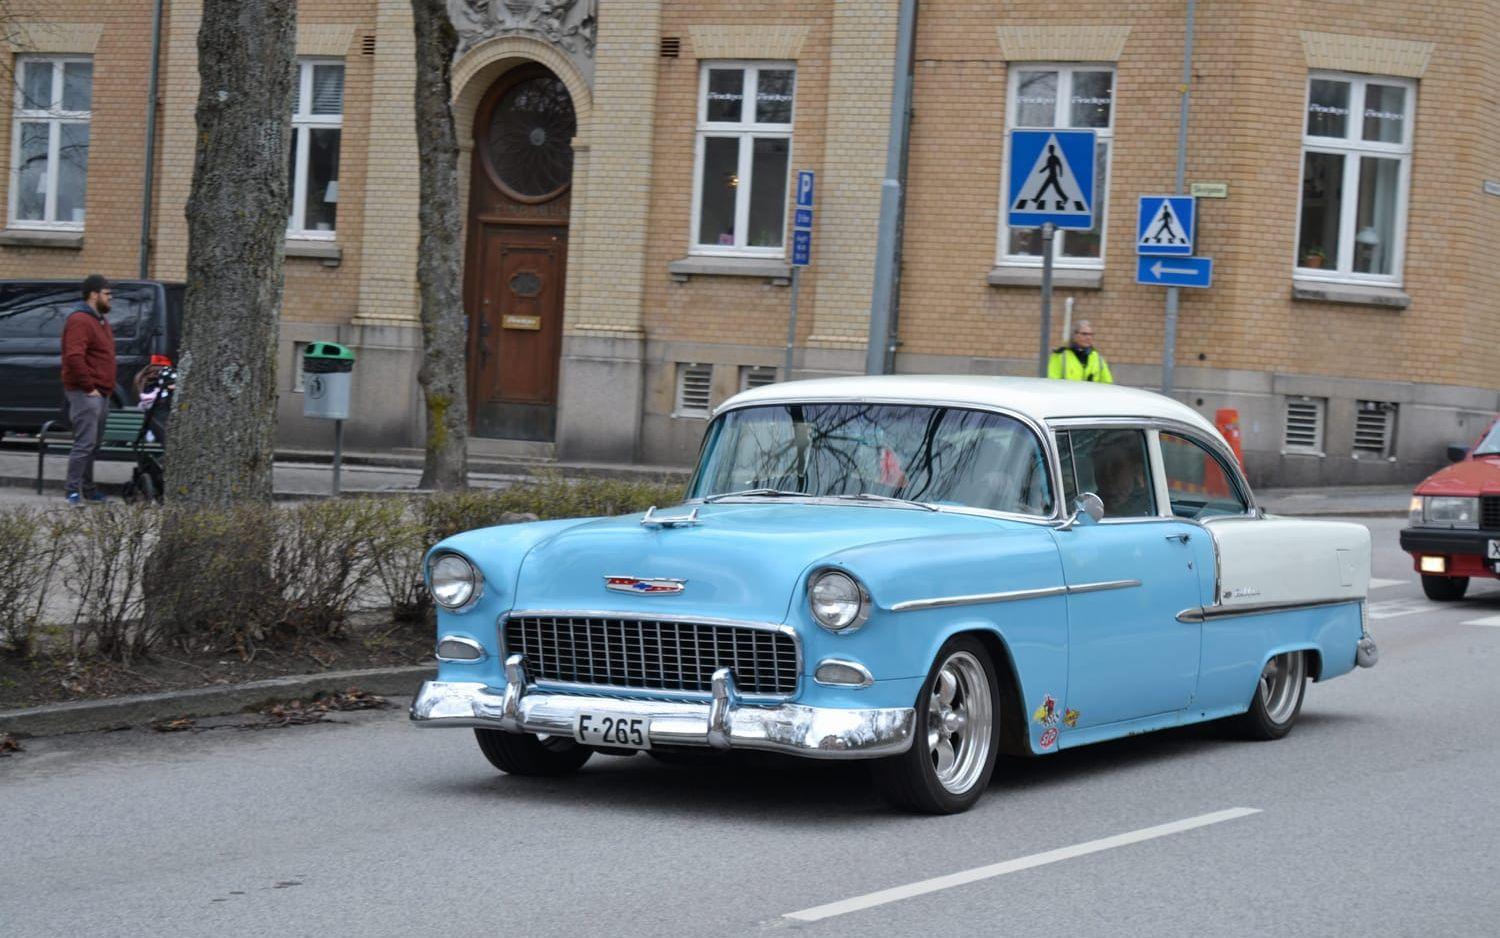 Bil, efter bil, rullade in i Strömstad. Bild: Ulf Blomgren